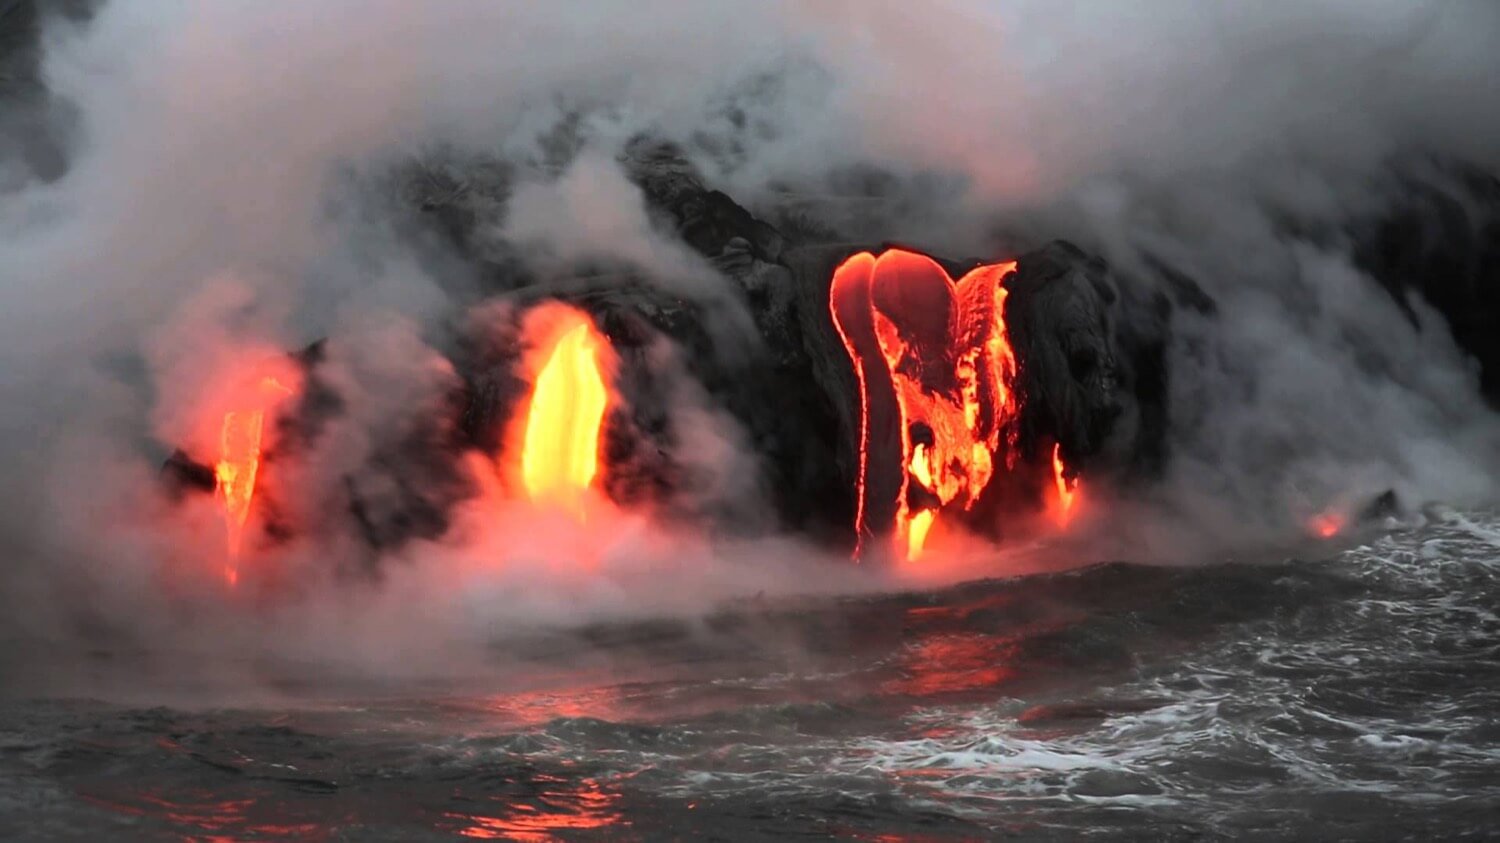 에 새로운 데이터 분화:하와이에서 증가에 용암 분출과 첫 번째 희생자는